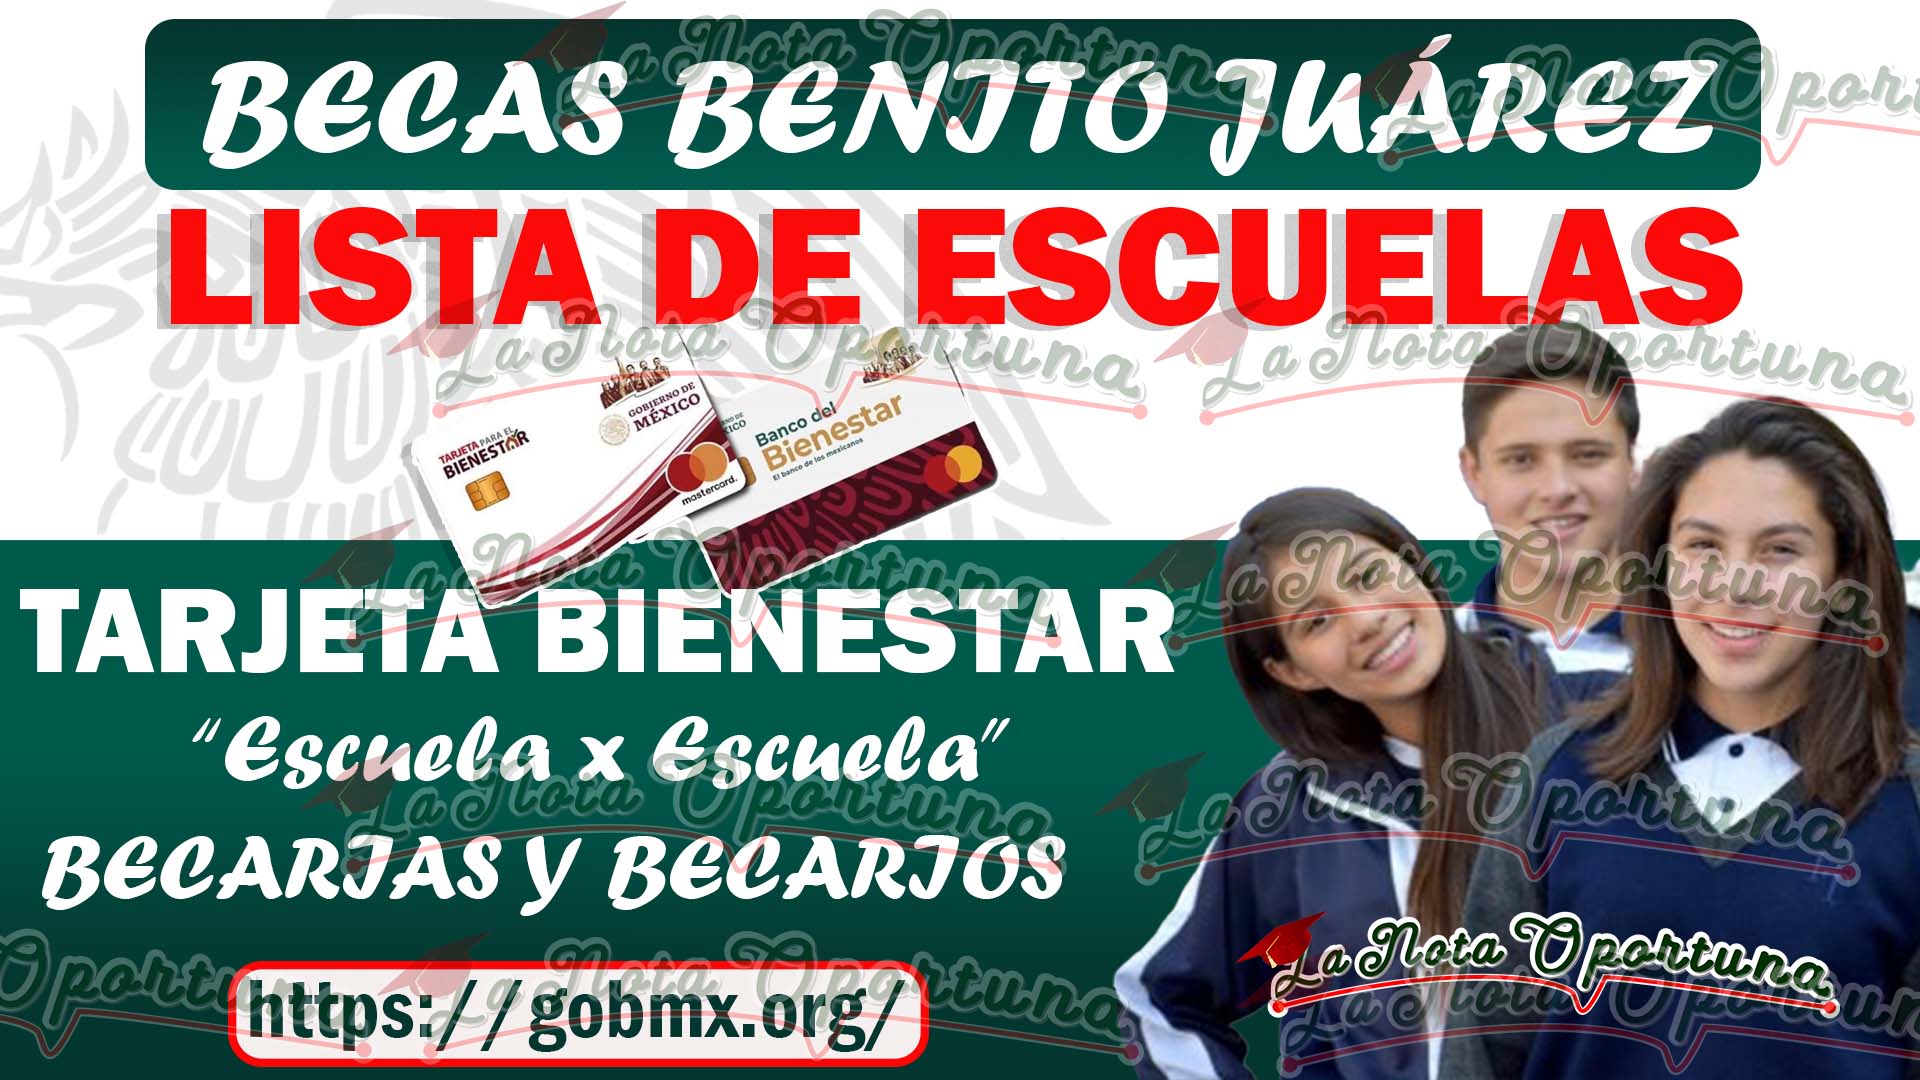 Becas Benito Juárez Entrega de Tarjeta Bienestar ¡Lista de Escuelas del 10 al 15 de abril!